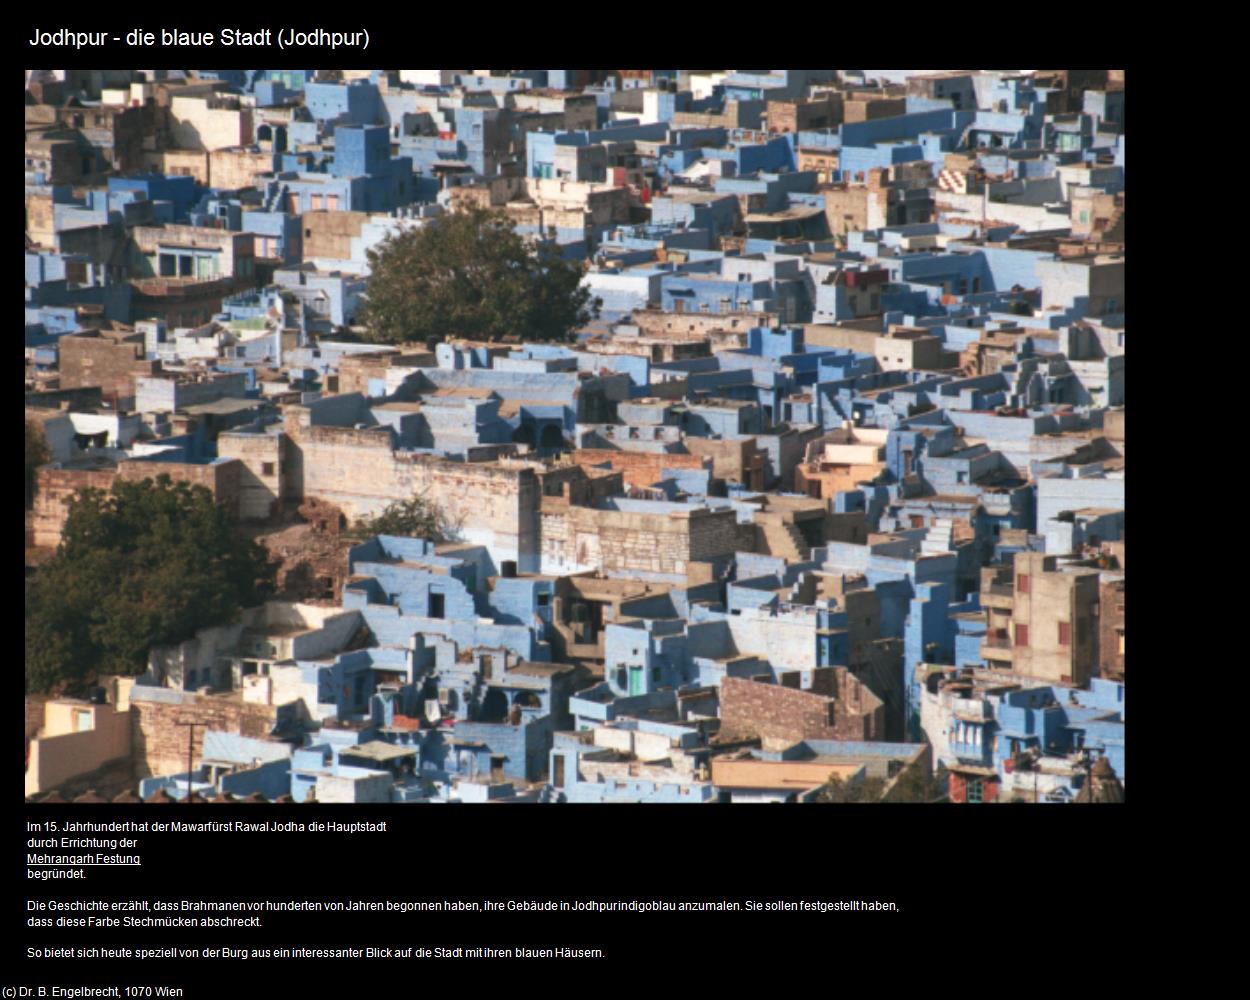 Die blaue Stadt (Jodhpur) in Rajasthan - das Land der Könige(c)B.Engelbrecht